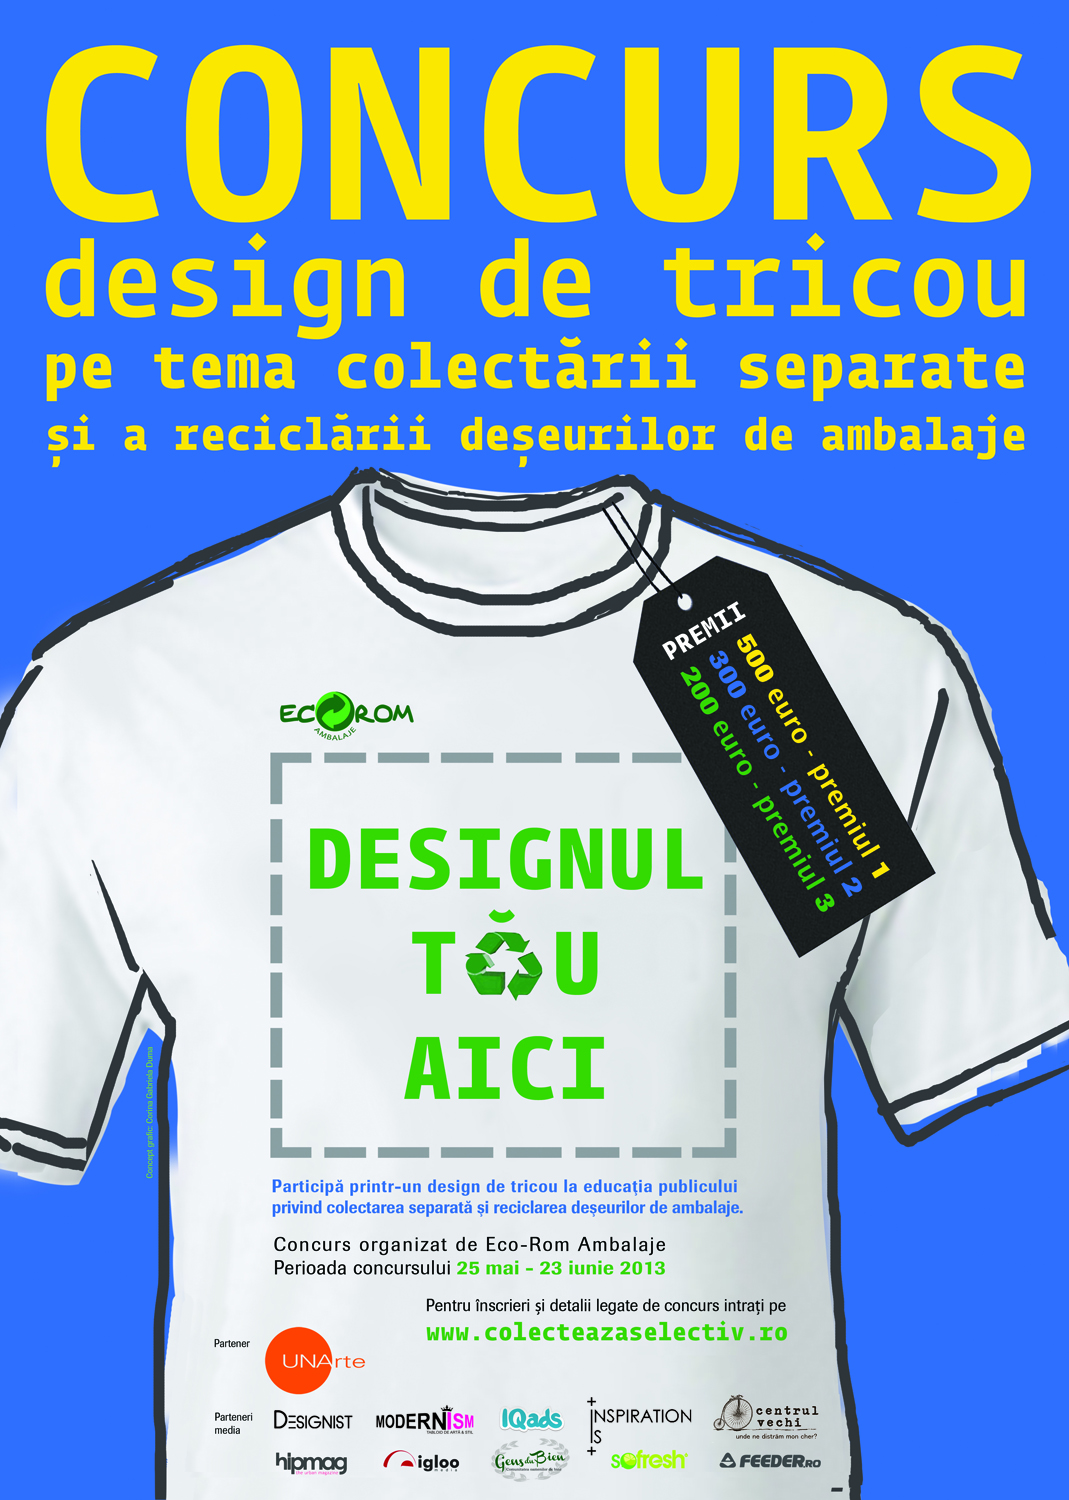 Concurs design creativ de tricou